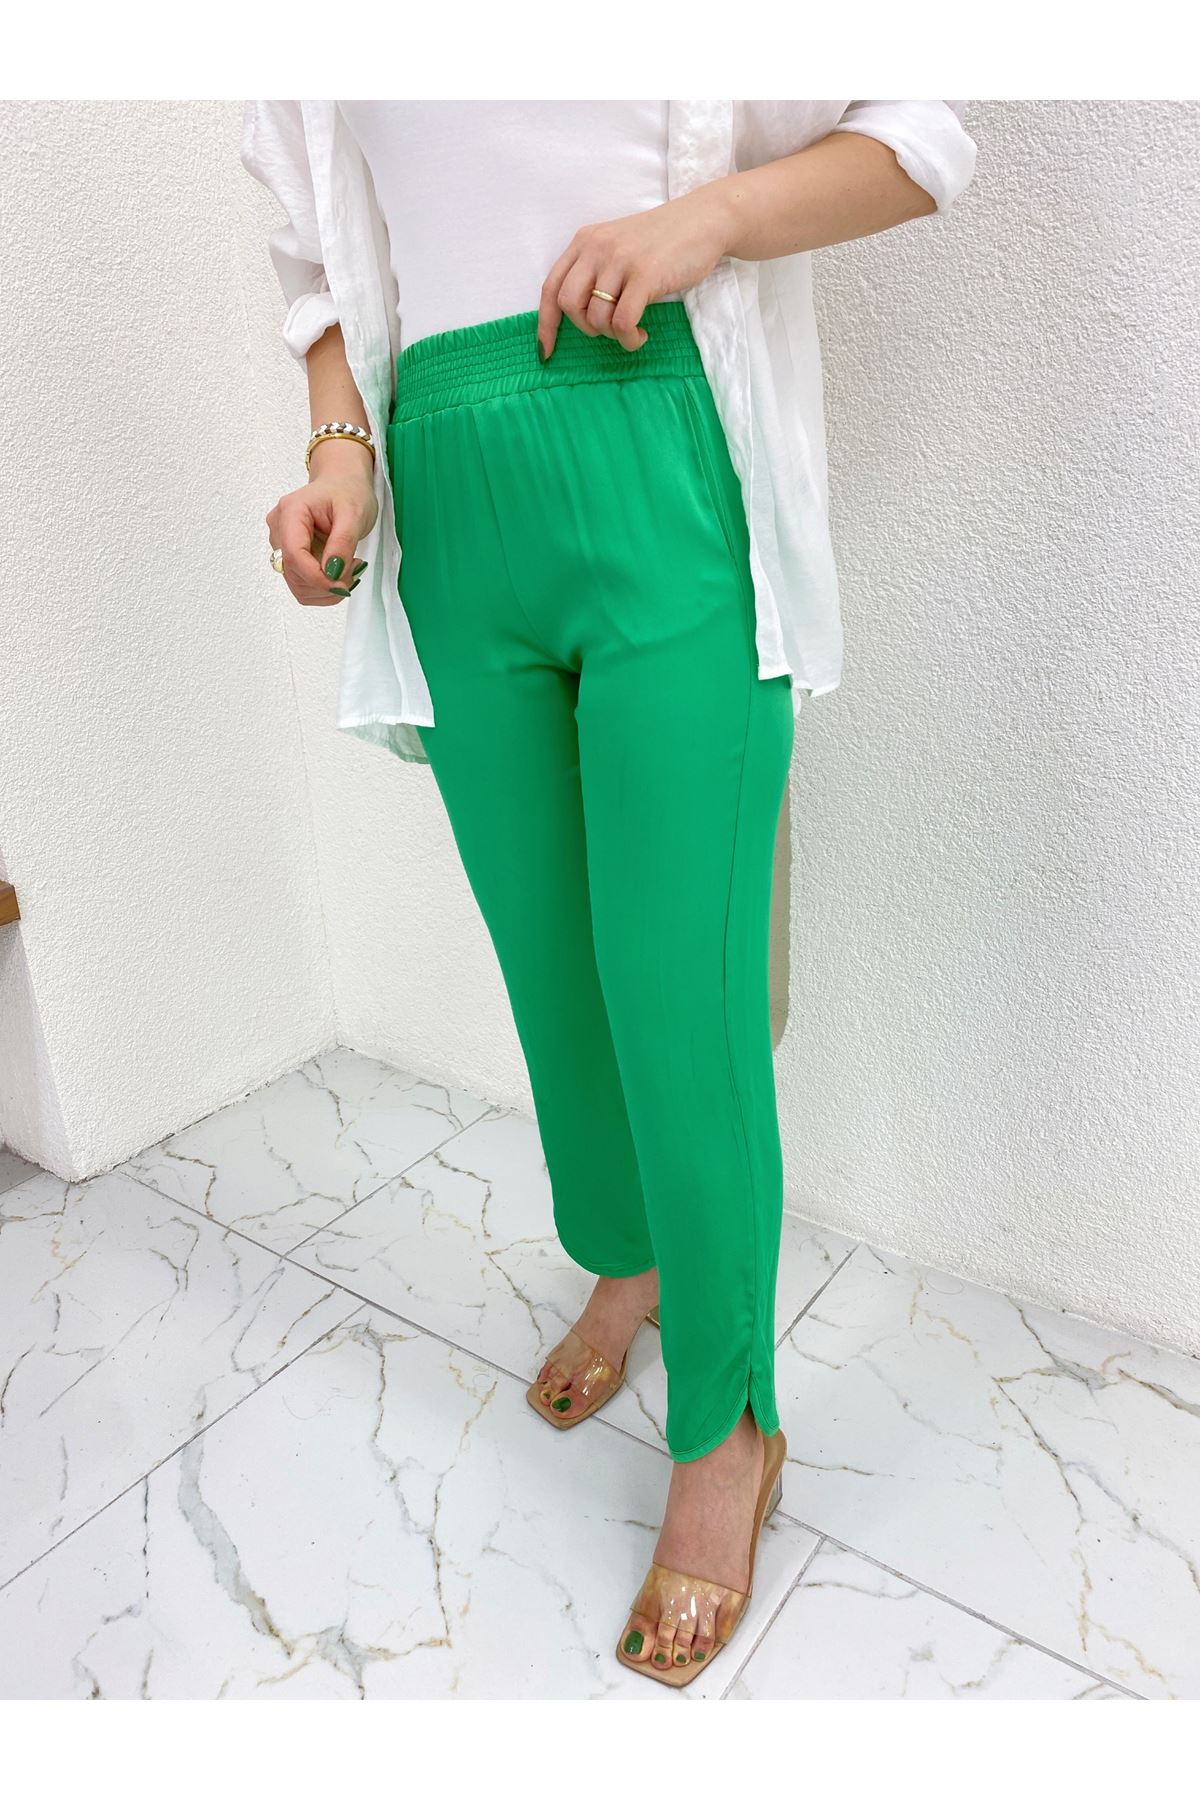 Orijinal Marka Yeşil Beli Lastikli Paçası Oval Yırtmaç Detaylı Saten Pantolon